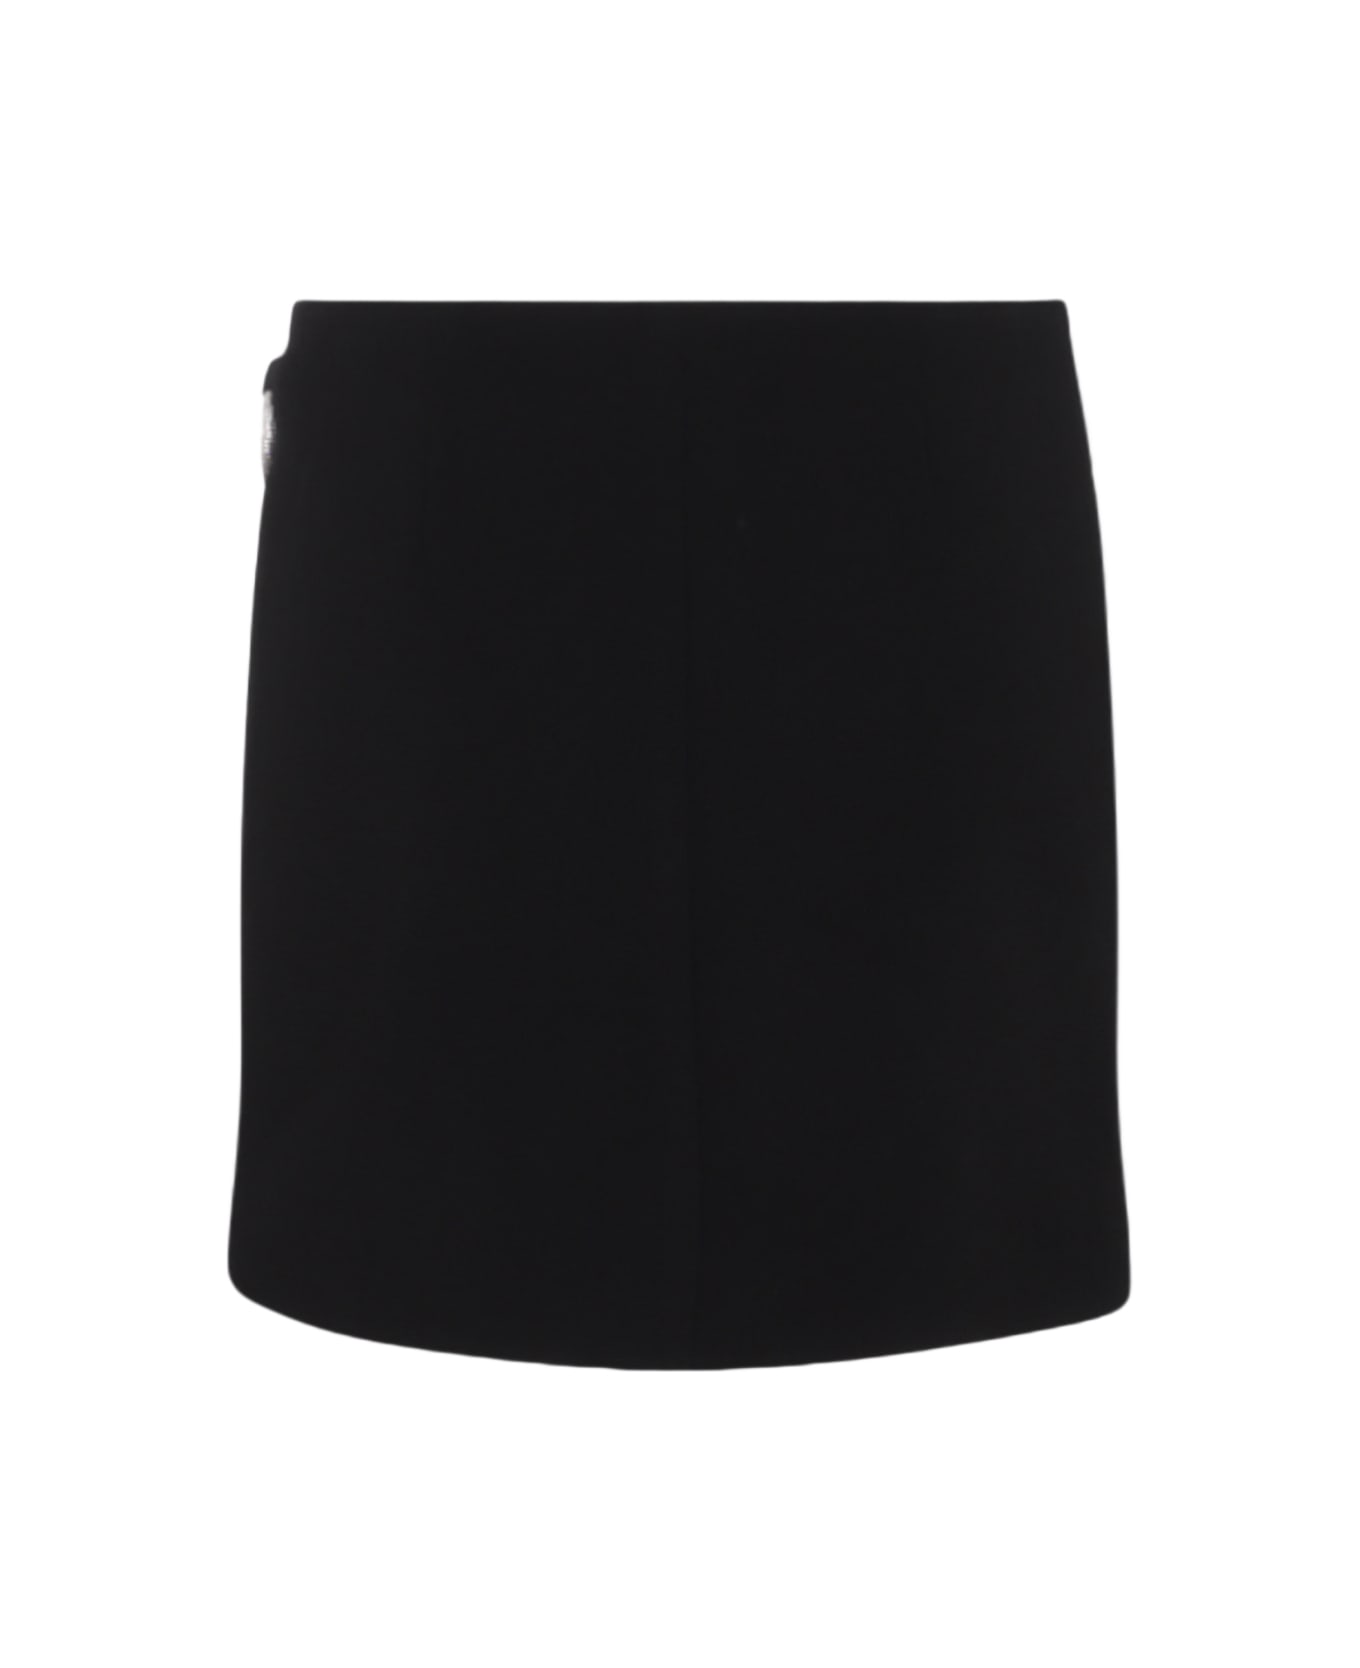 Simkhai Black Mini Skirt スカート